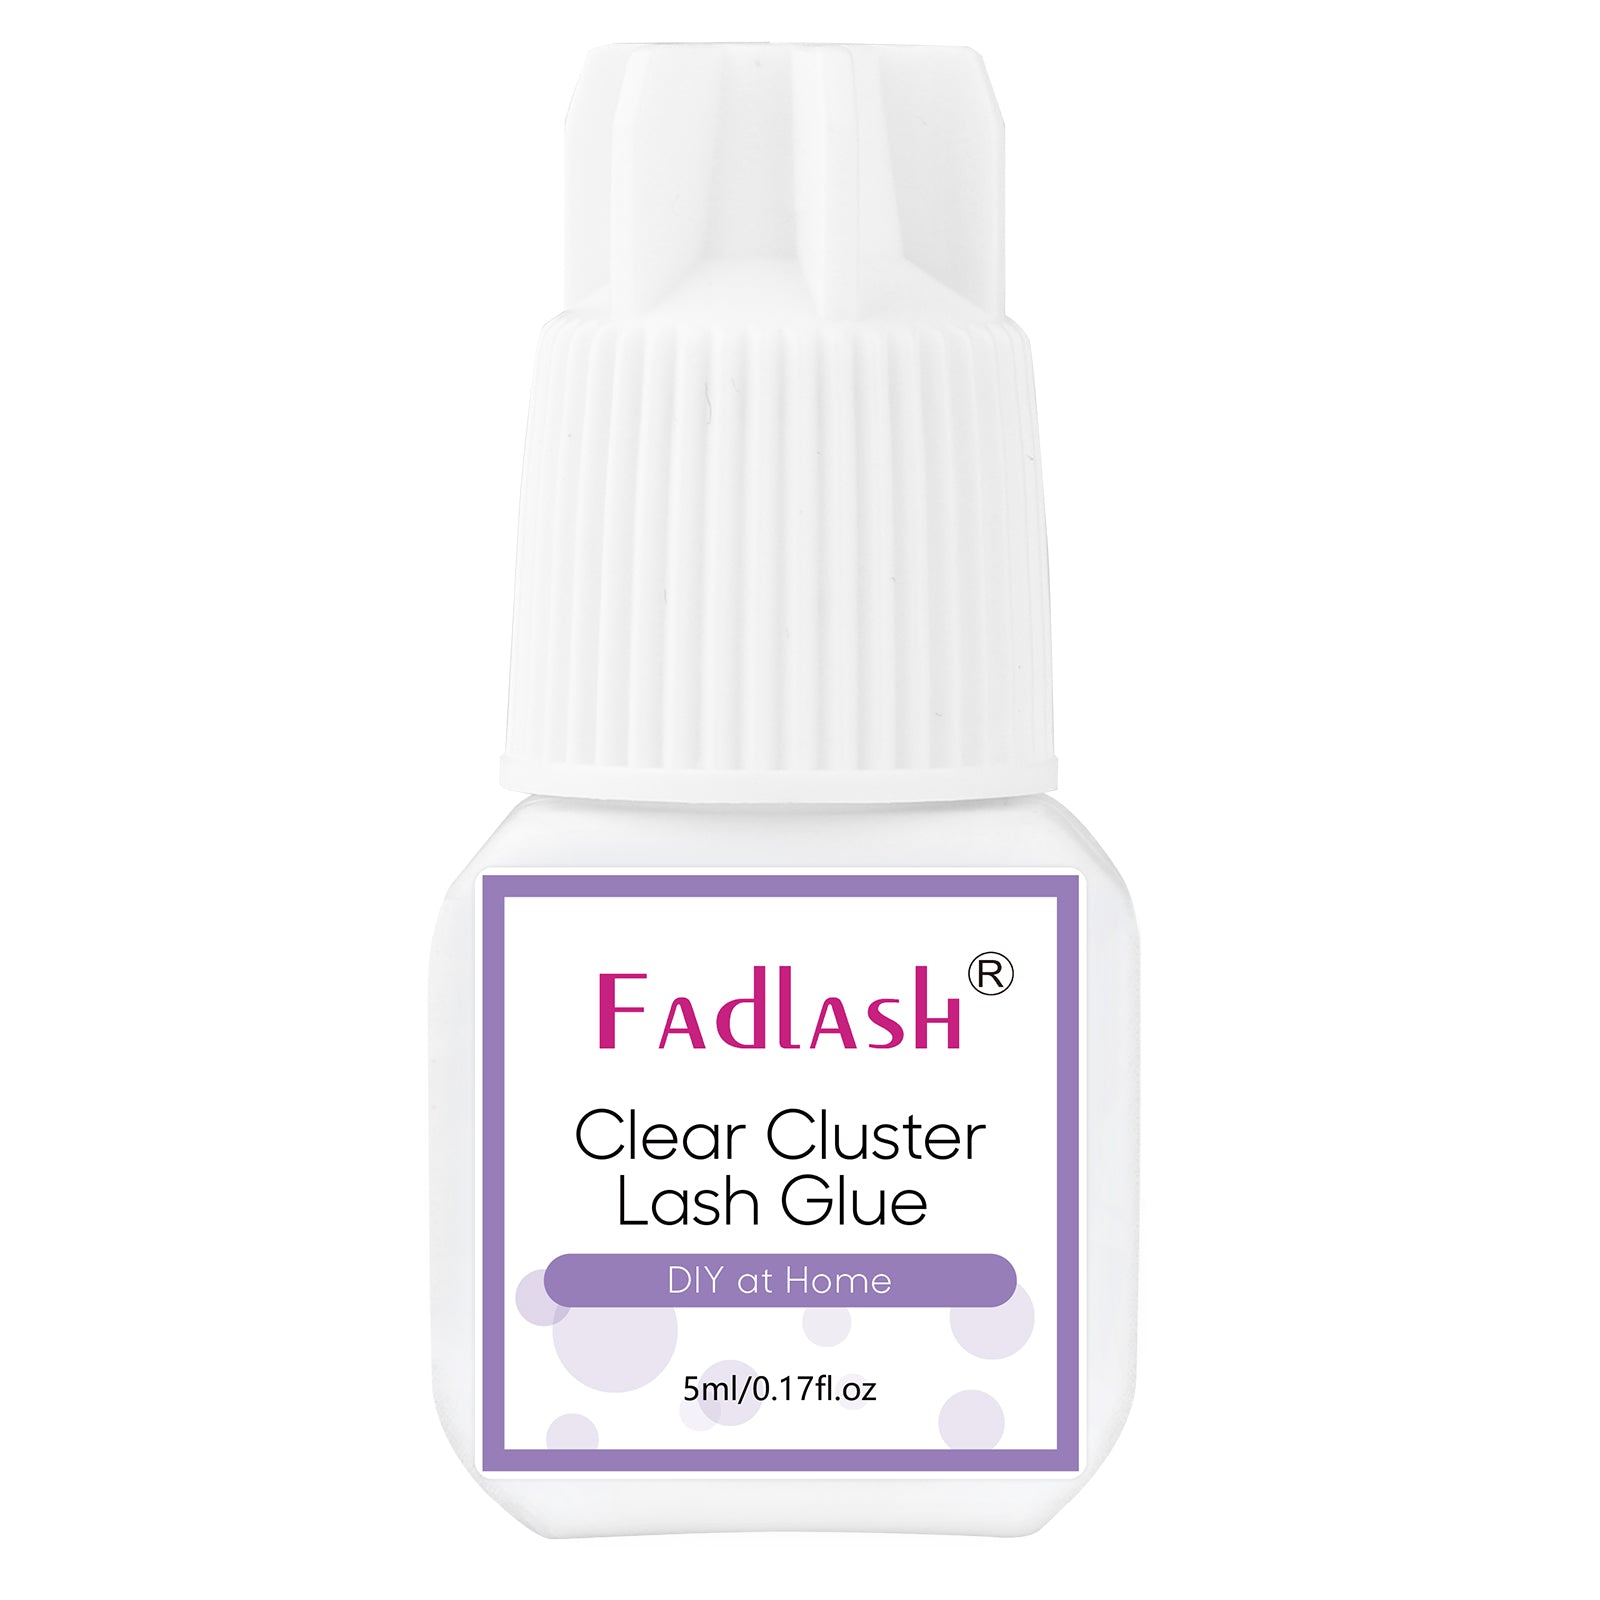 Clear Cluster Lash Glue - Fadlash